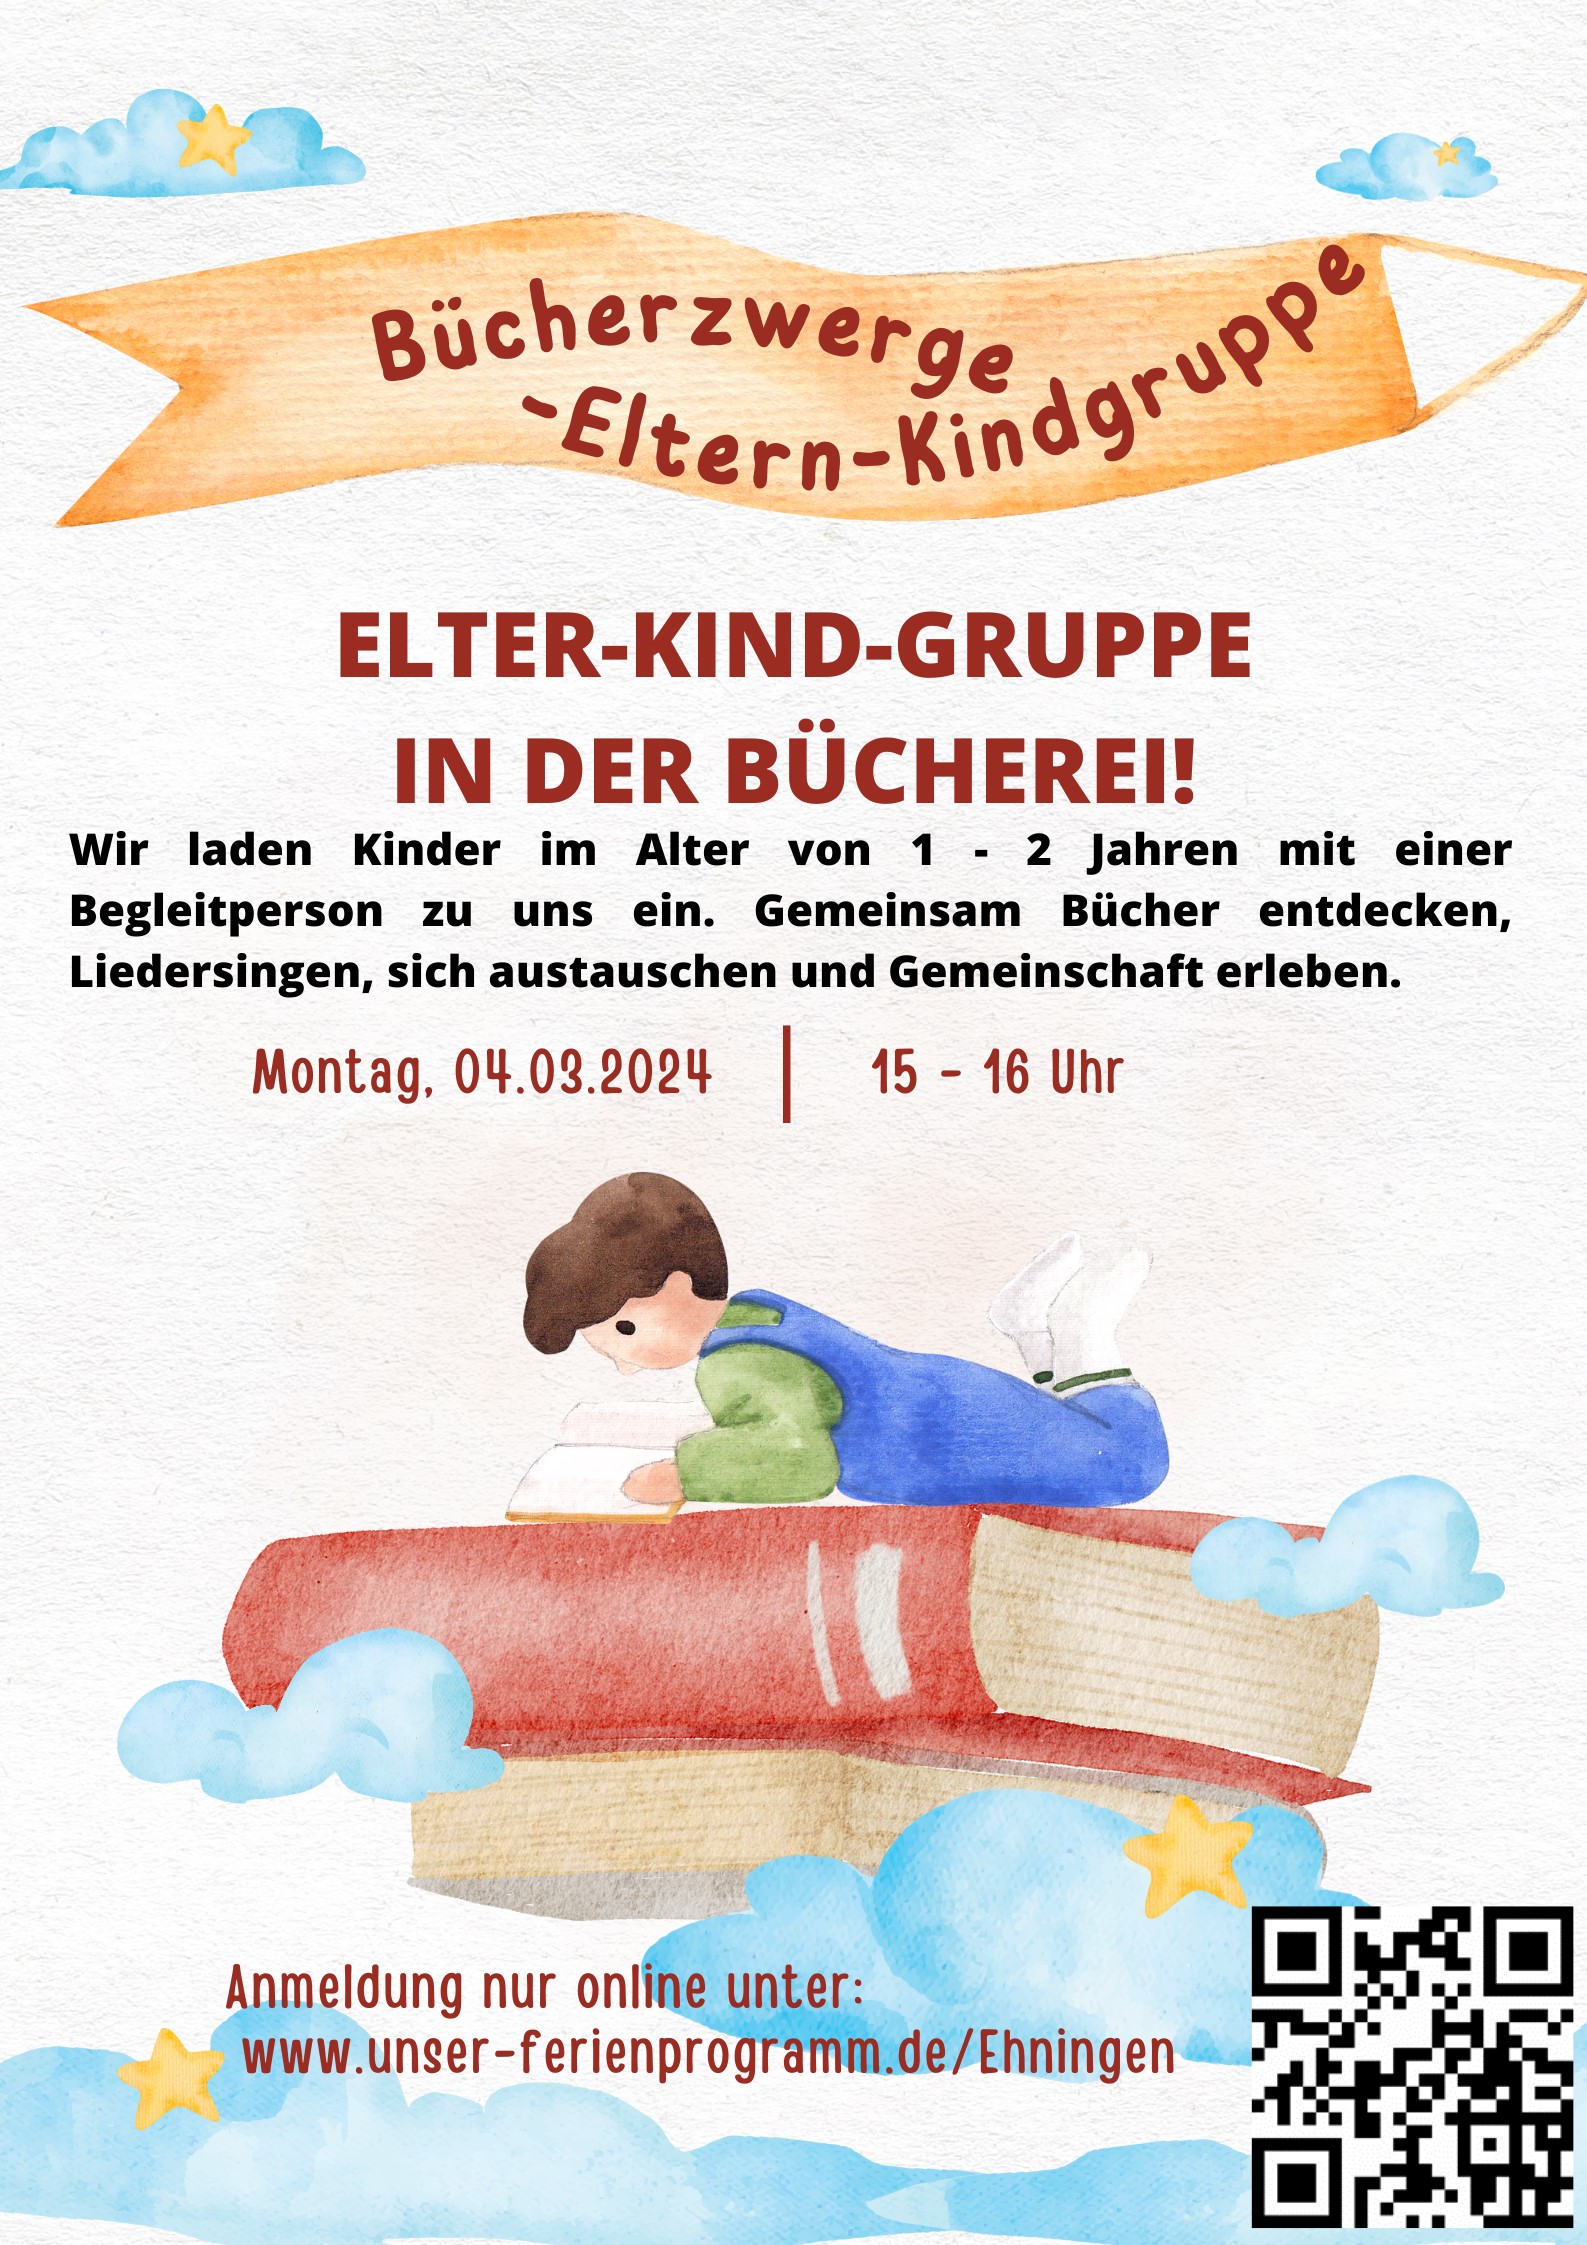 Zeigt das Plakat für die Eltern-Kind-Gruppe Bücherzwerge in der Bücherei